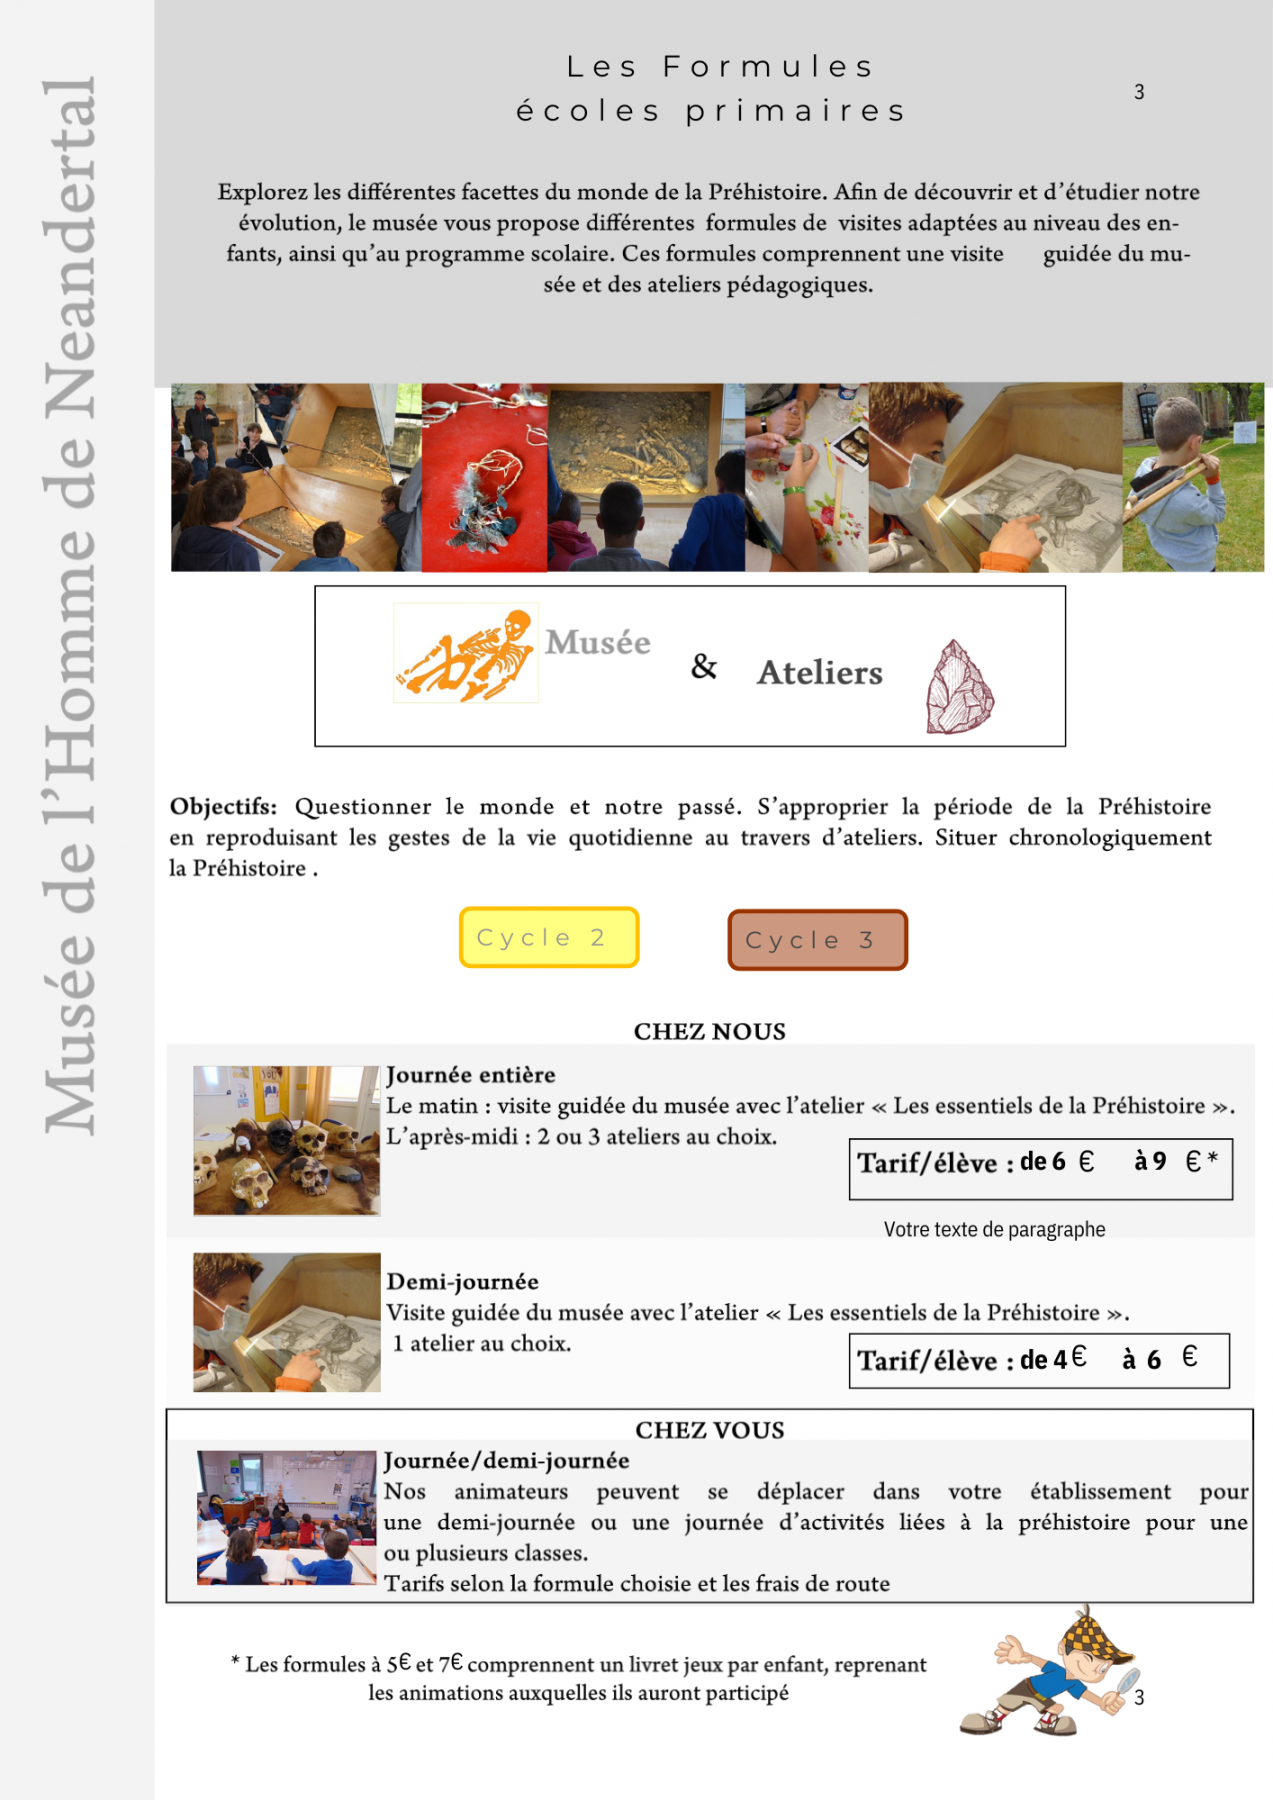 Brochure-pour-les-scolaires-2022-2024-document-à-destination-des-enseignants-public-scolaire-animations-à-faire-avec-sa-classe-du-cycle-2-au-lycée-Musée-de-l'Homme-de-Neandertal-La-Chapelle-aux-Saints-Corrèze-Nouvelle-Aquitaine-Vallée-de-la-Dordogne